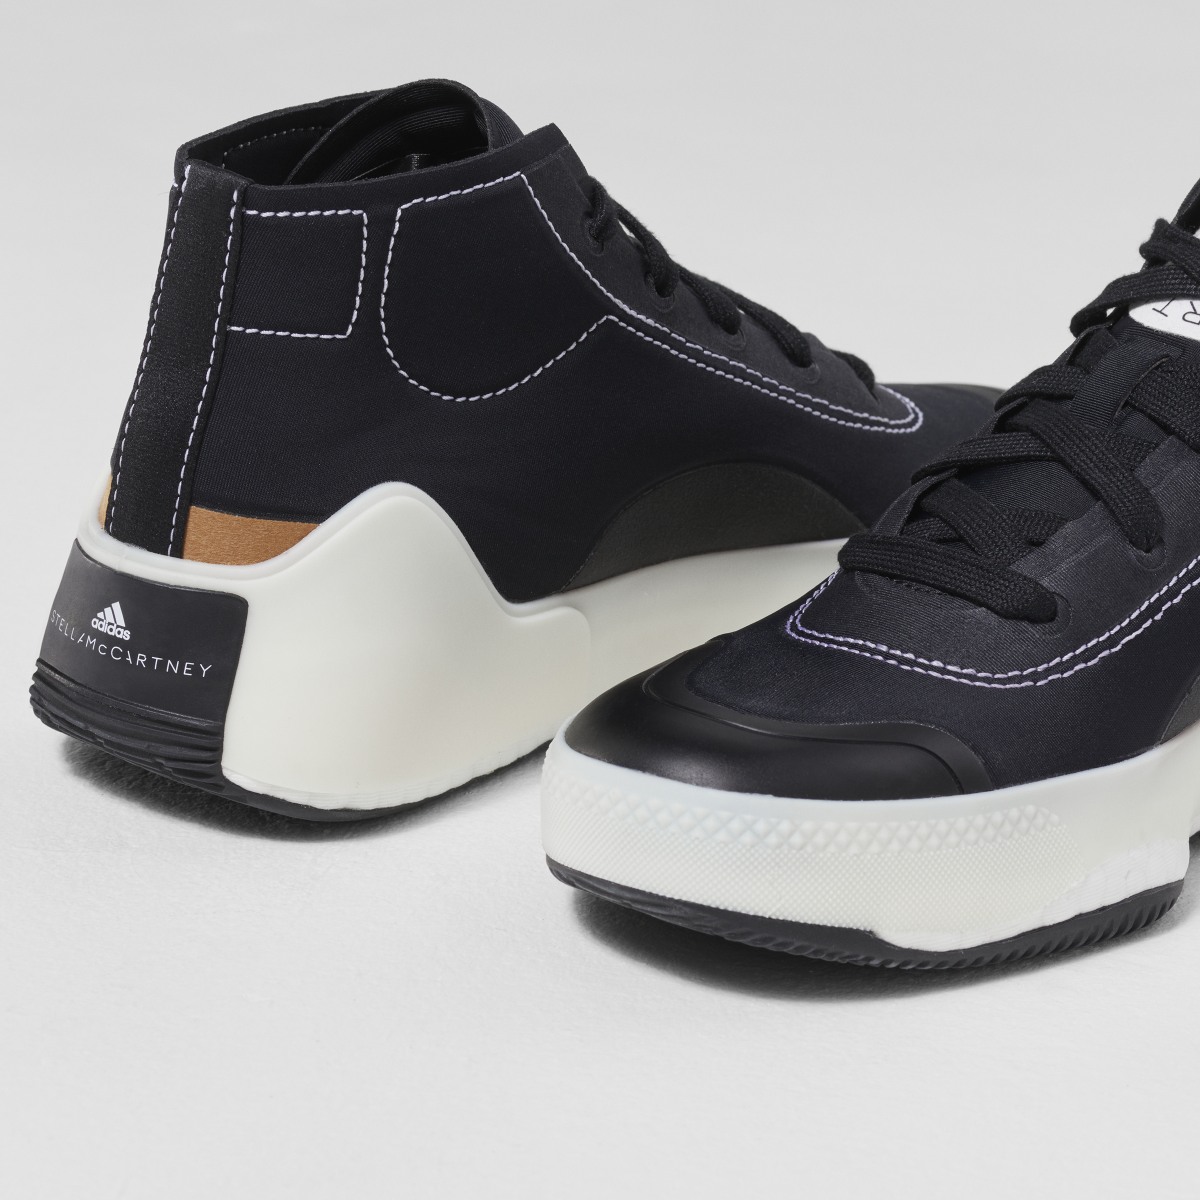 Adidas by Stella McCartney Treino Mid-Cut Shoes. 18